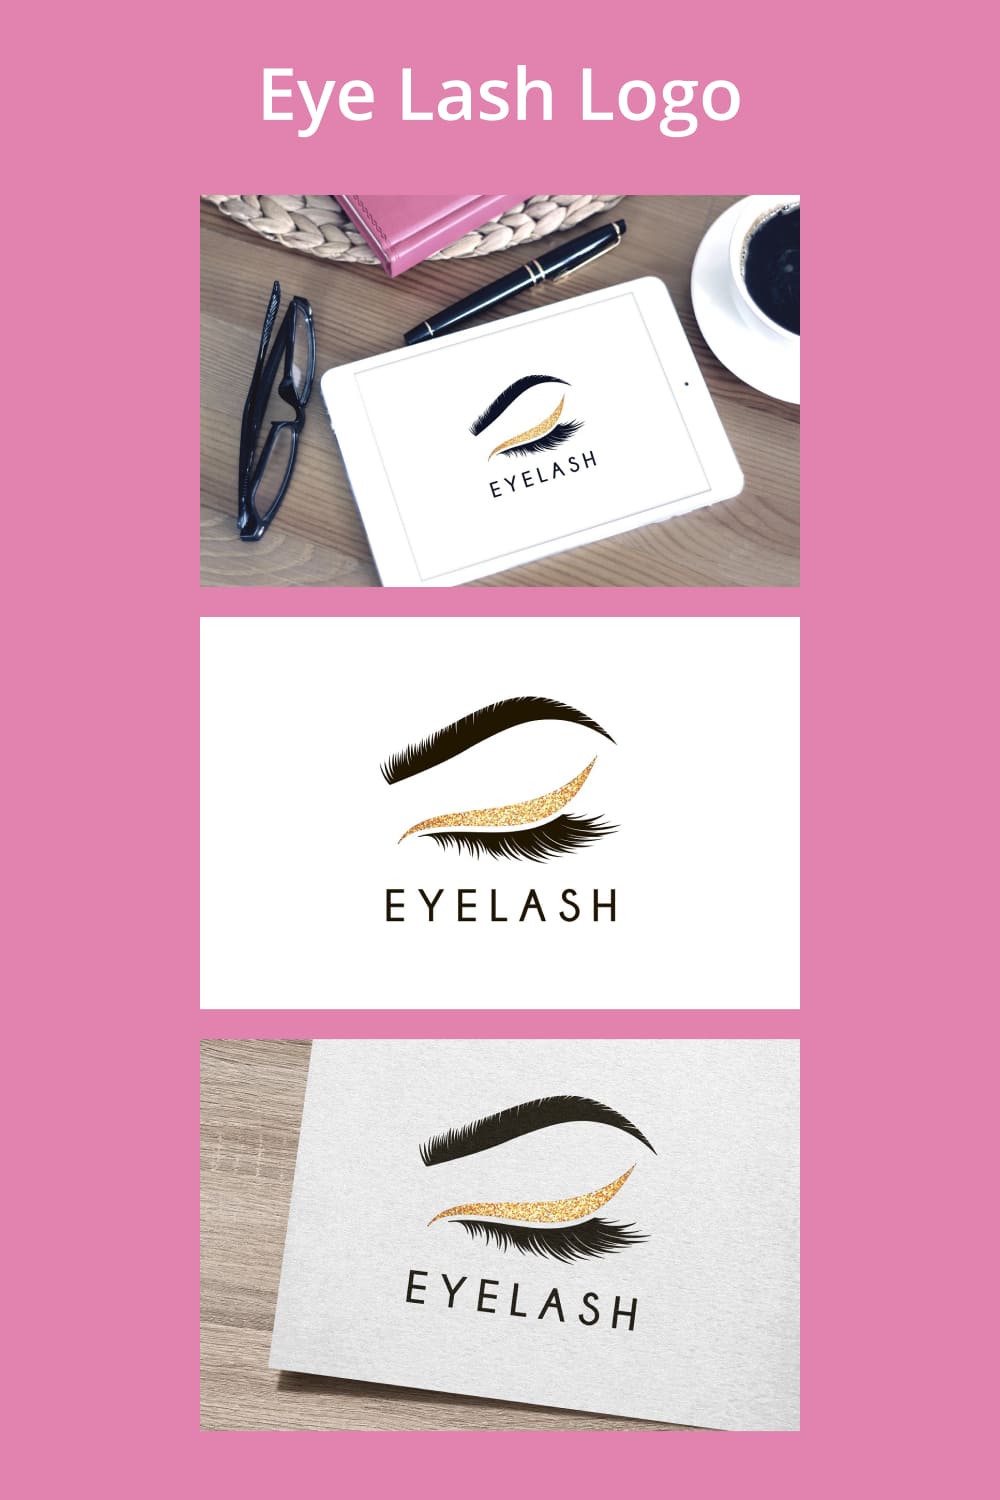 Eye Lash Logo - pinterest image preview.